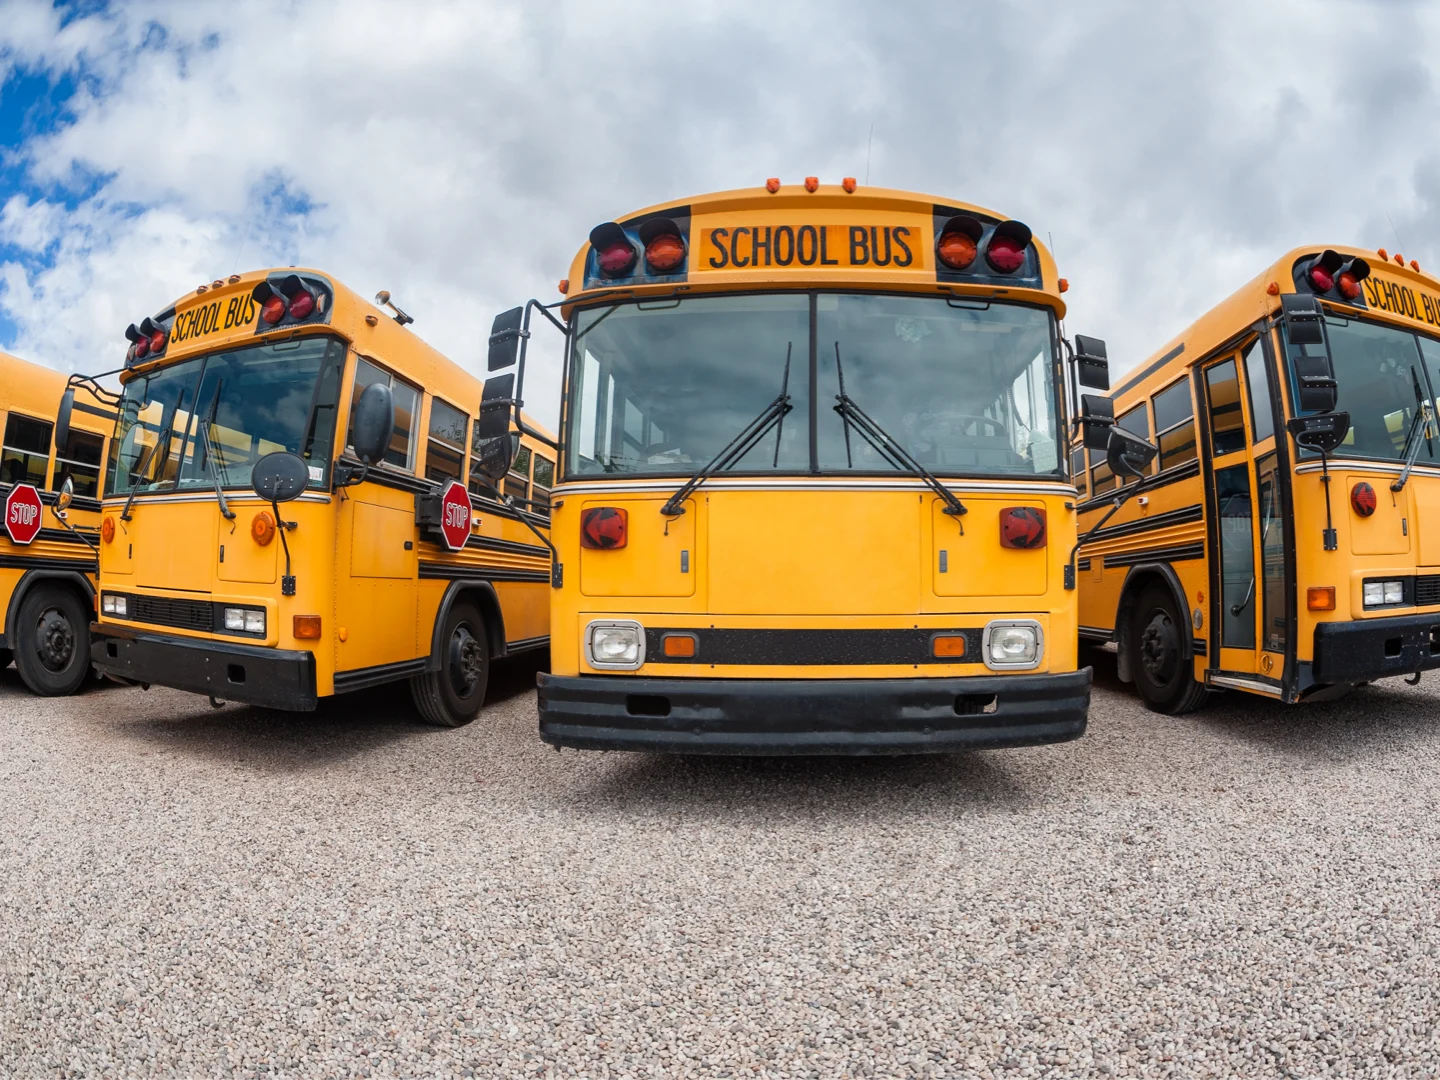 Fisheye view of parked school buses in St. George, Utah, United States.